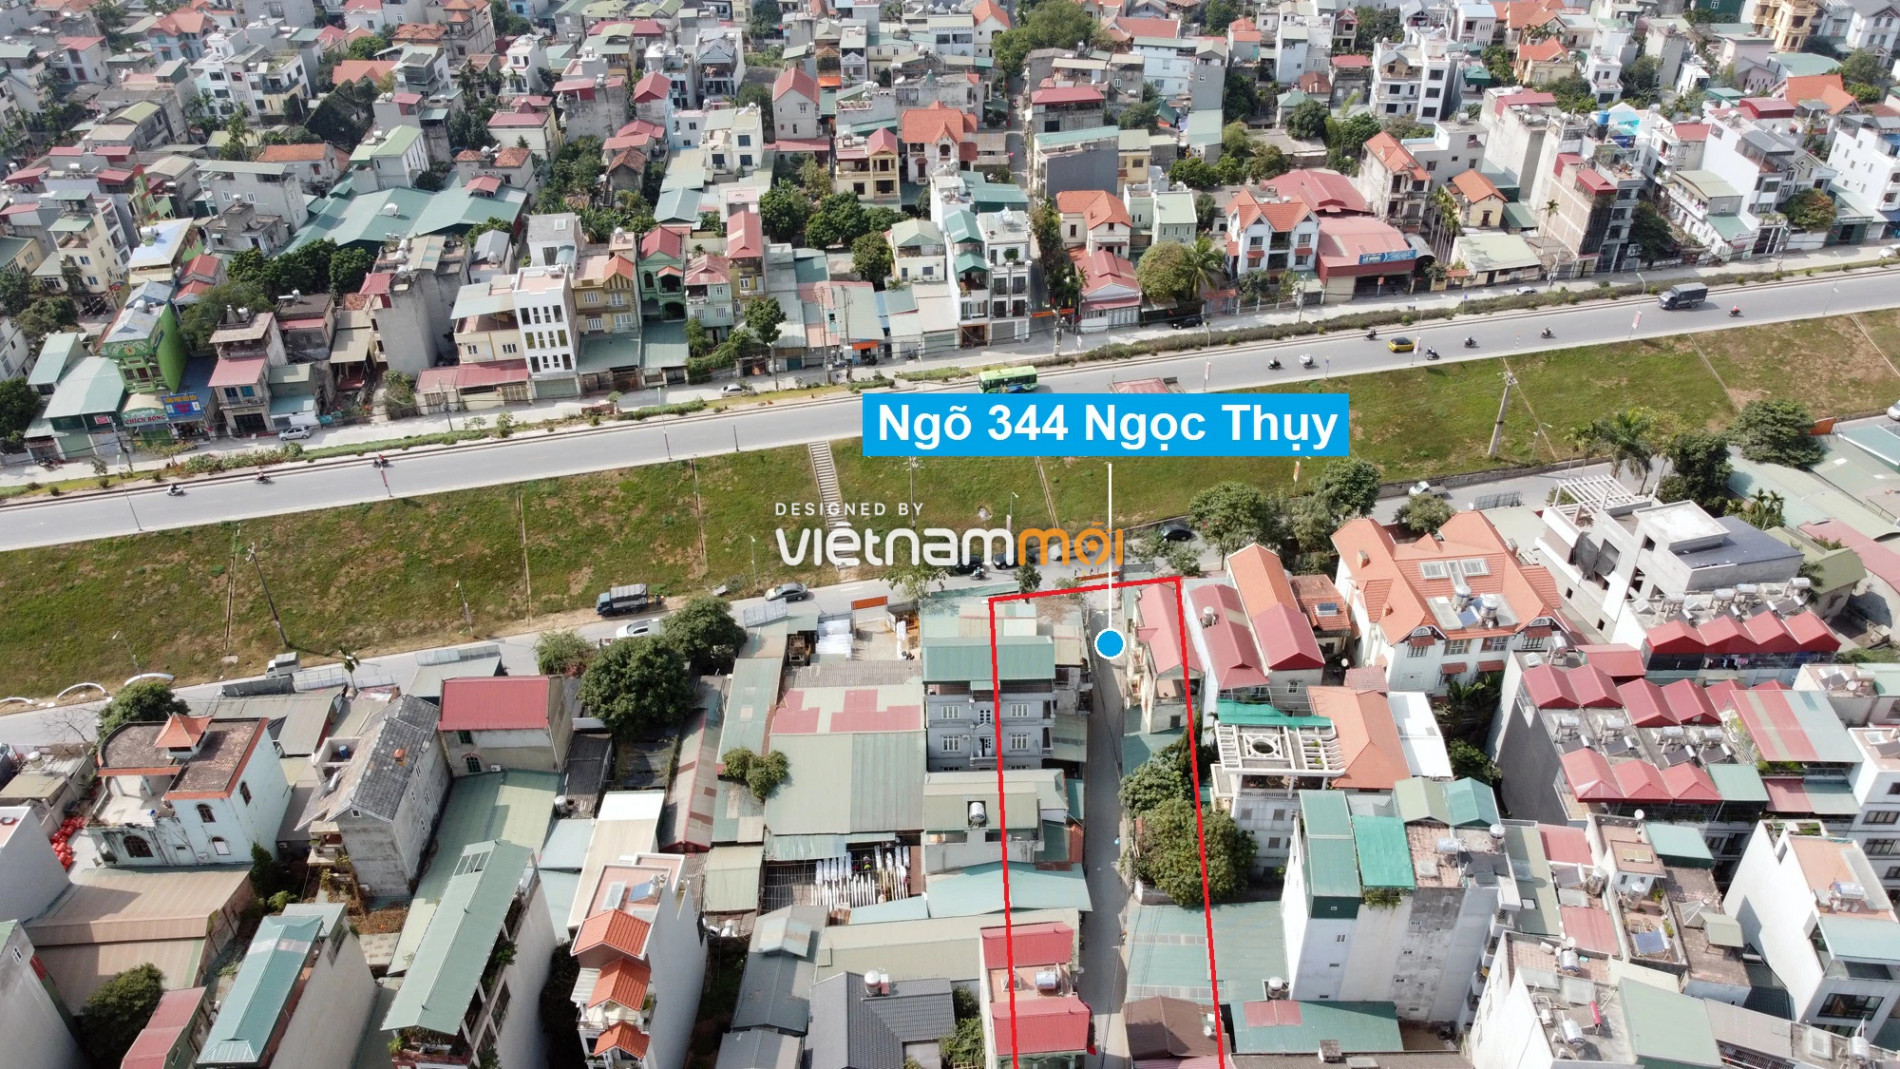 Những khu đất sắp thu hồi để mở đường ở phường Ngọc Thụy, Long Biên, Hà Nội (phần 3) - Ảnh 3.